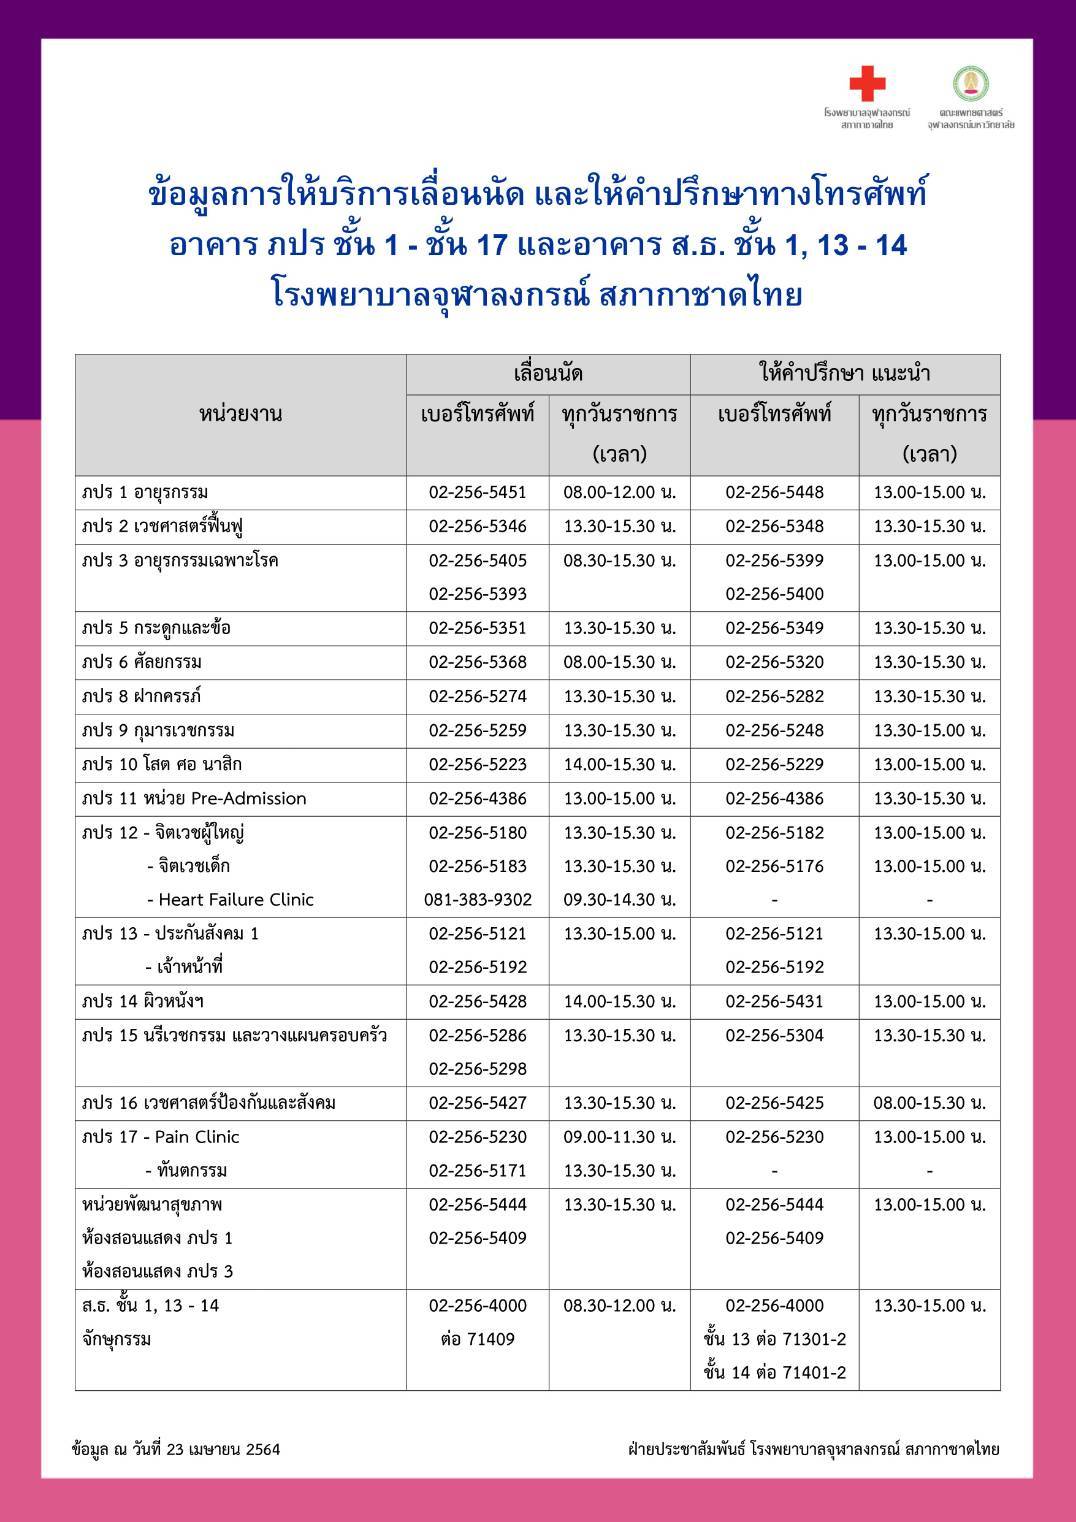 ข้อมูลการให้บริการเลื่อนนัด และให้คำปรึกษาทางโทรศัพท์ อาคาร ภปร ชั้น 1 – ชั้น 17 และอาคาร ส.ธ. ชั้น 1, 13 – 14 โรงพยาบาลจุฬาลงกรณ์ สภากาชาดไทย